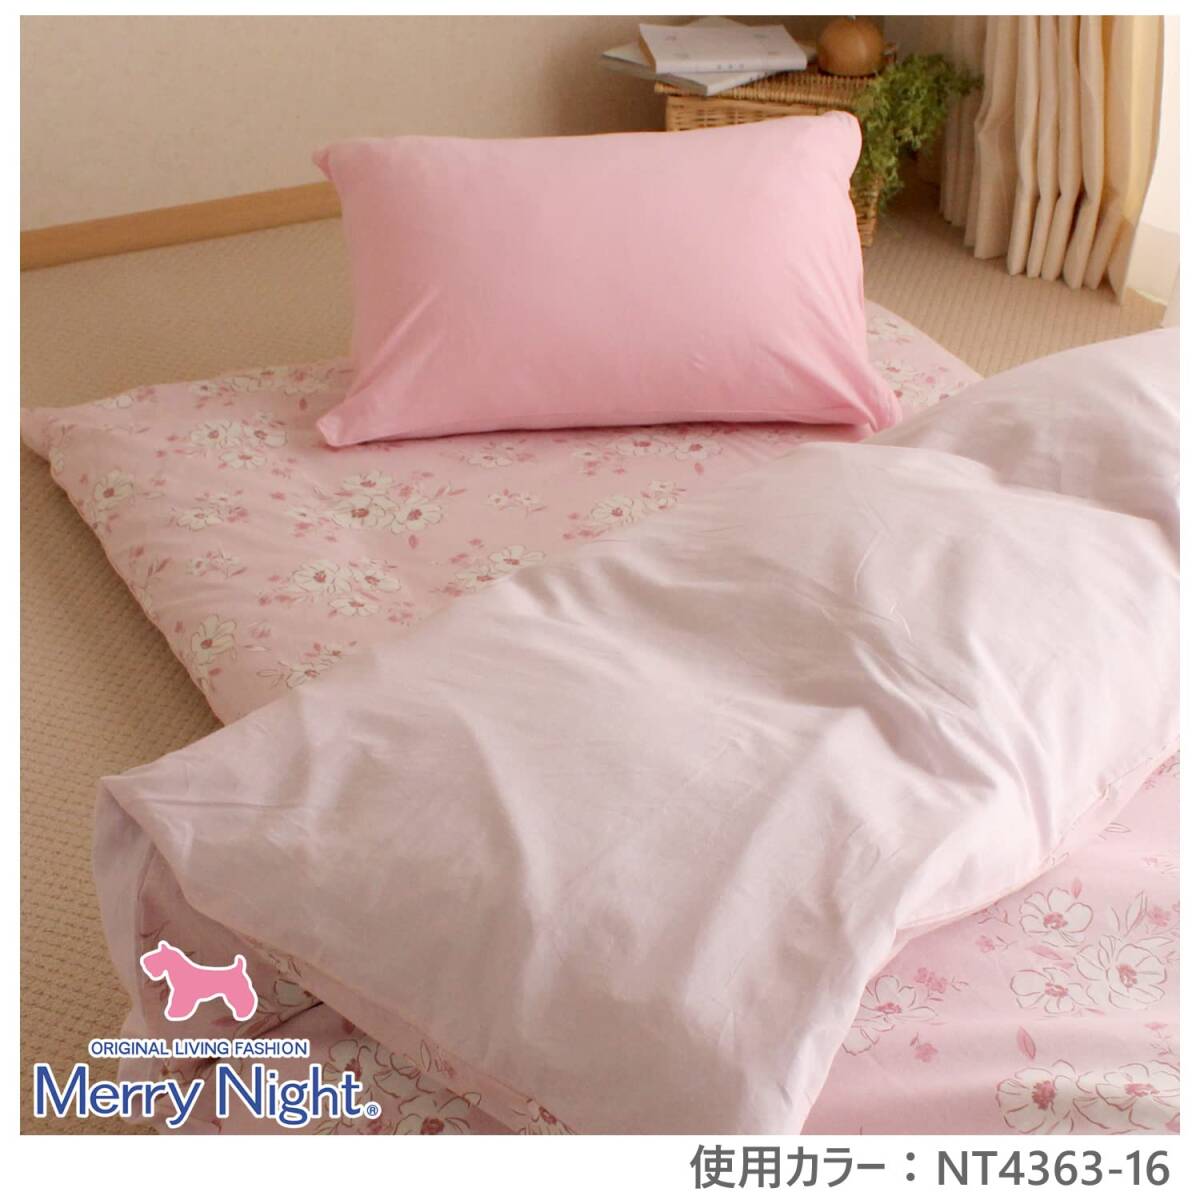 メリーナイト 枕カバー 無地カラー ピンク 約43×63cm ファスナー式 まくらが入れやすい 綿100% ニット素材 ピタッと装着 洗える オ_画像7